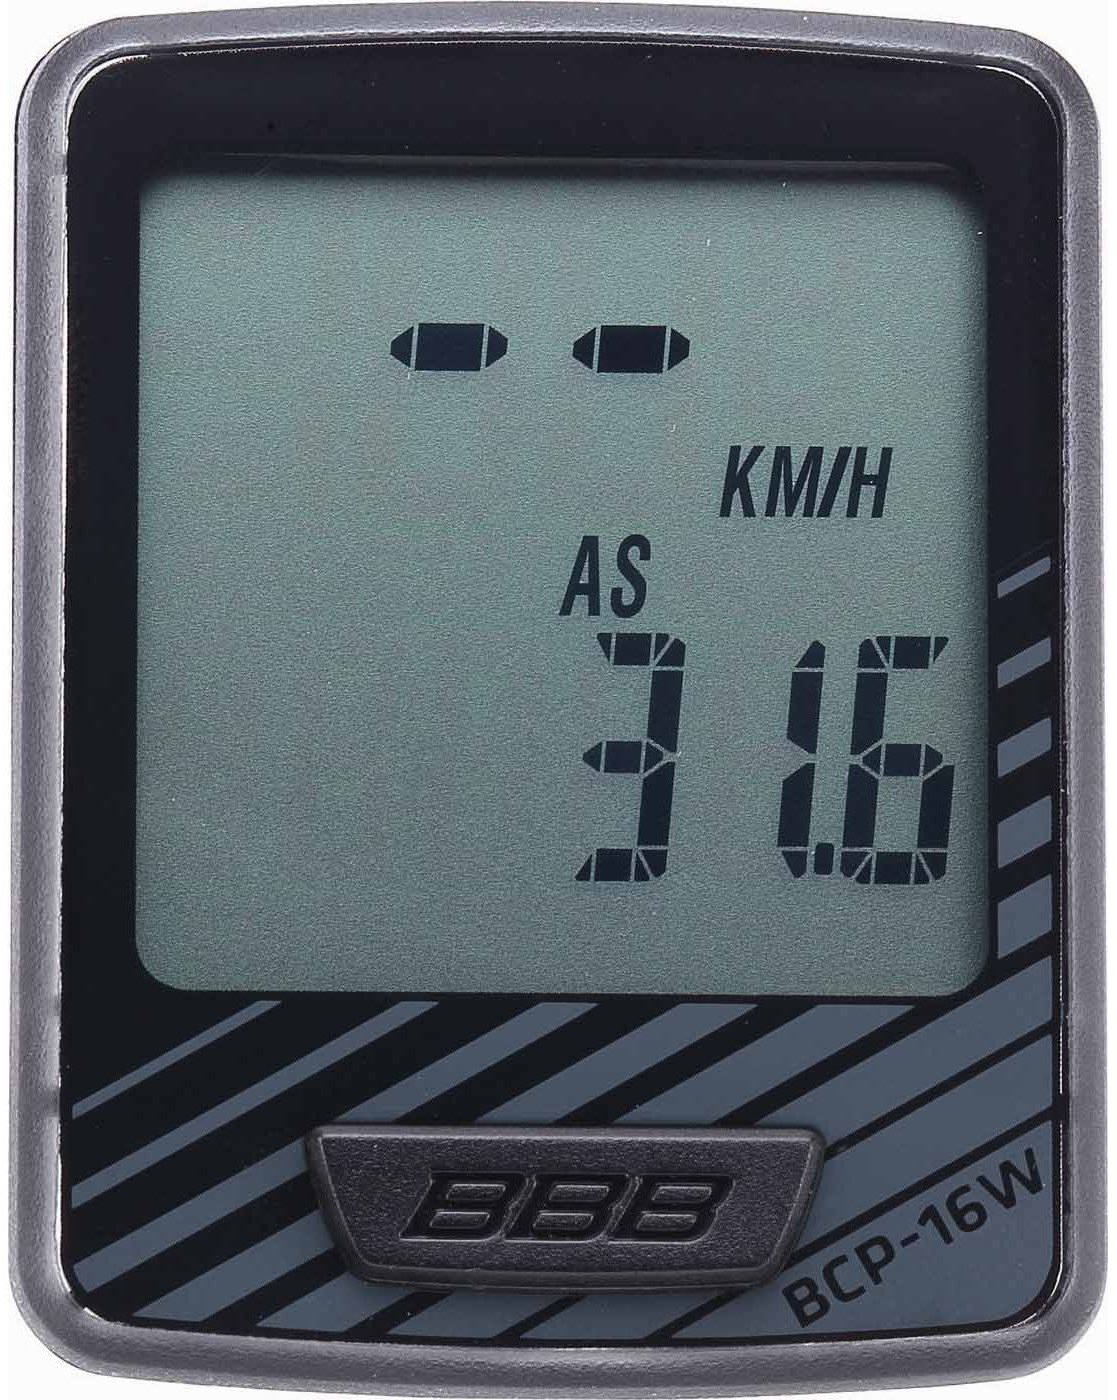 Electrónica de ciclismo BBB DashBoard 12 Wireless